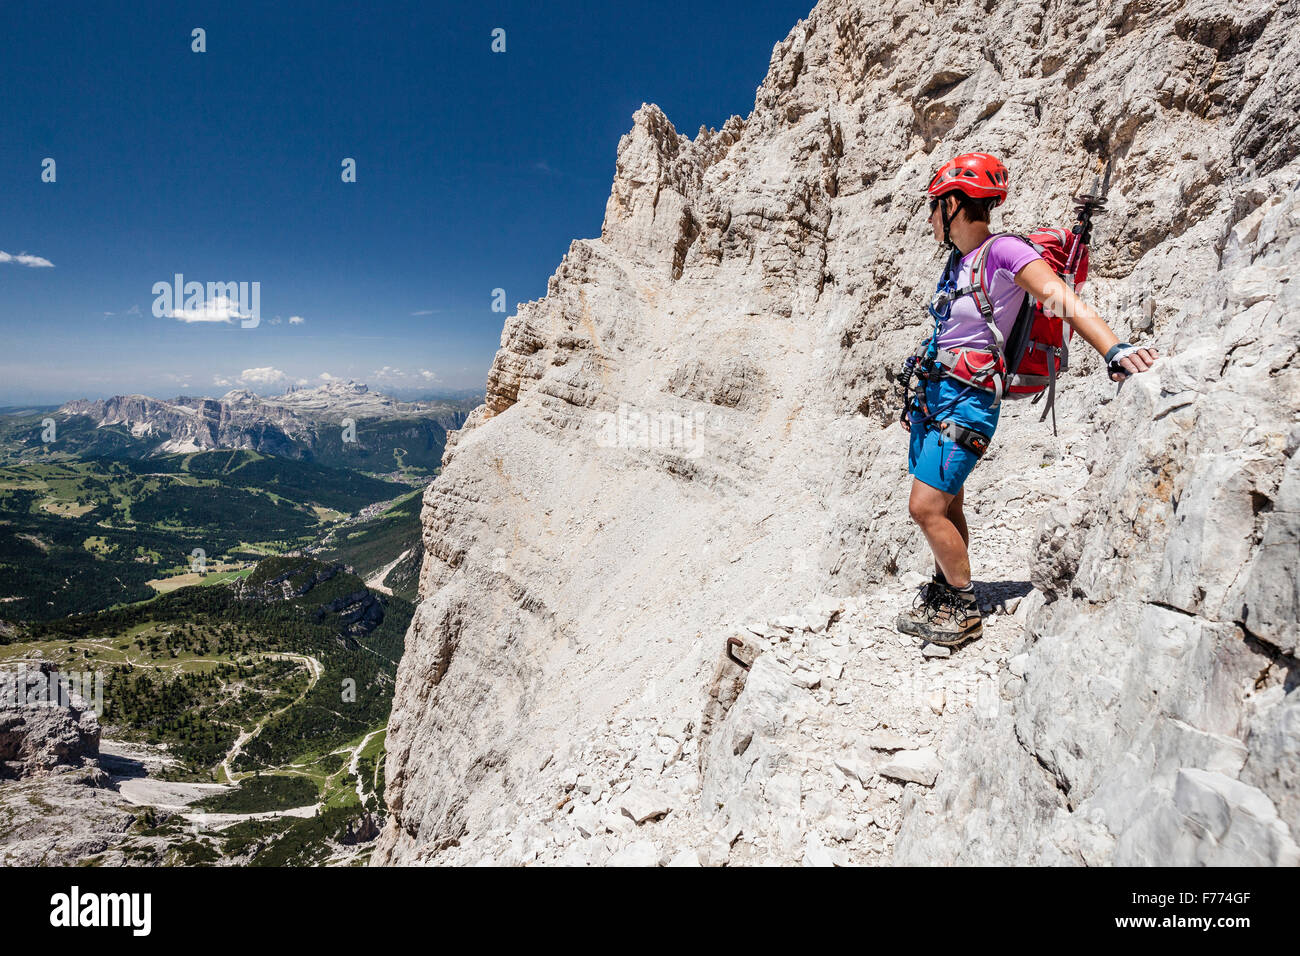 Alpinista discendente dalla Southern Fanes picco, Via Ferrata Veronesi, Sella dietro, Dolomiti, Alto Adige, Alpi, Italia Foto Stock